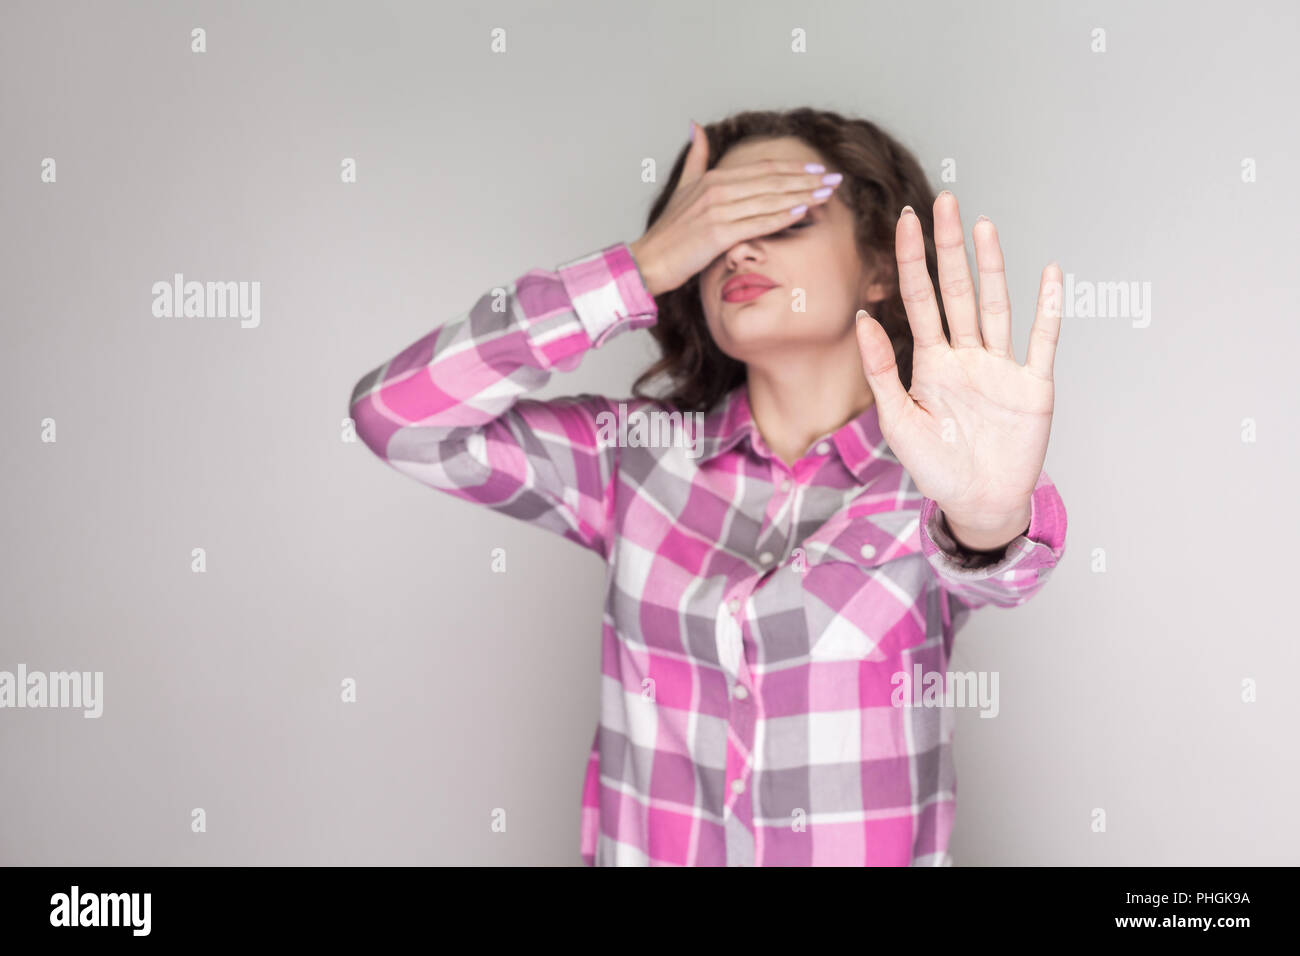 Ich sehe es nicht sehen wollen. verwirrt Mädchen mit rosa kariertem Hemd und Angst und schloss ihre Augen mit der Hand und versuchen zu blockieren. indoor Studi Stockfoto